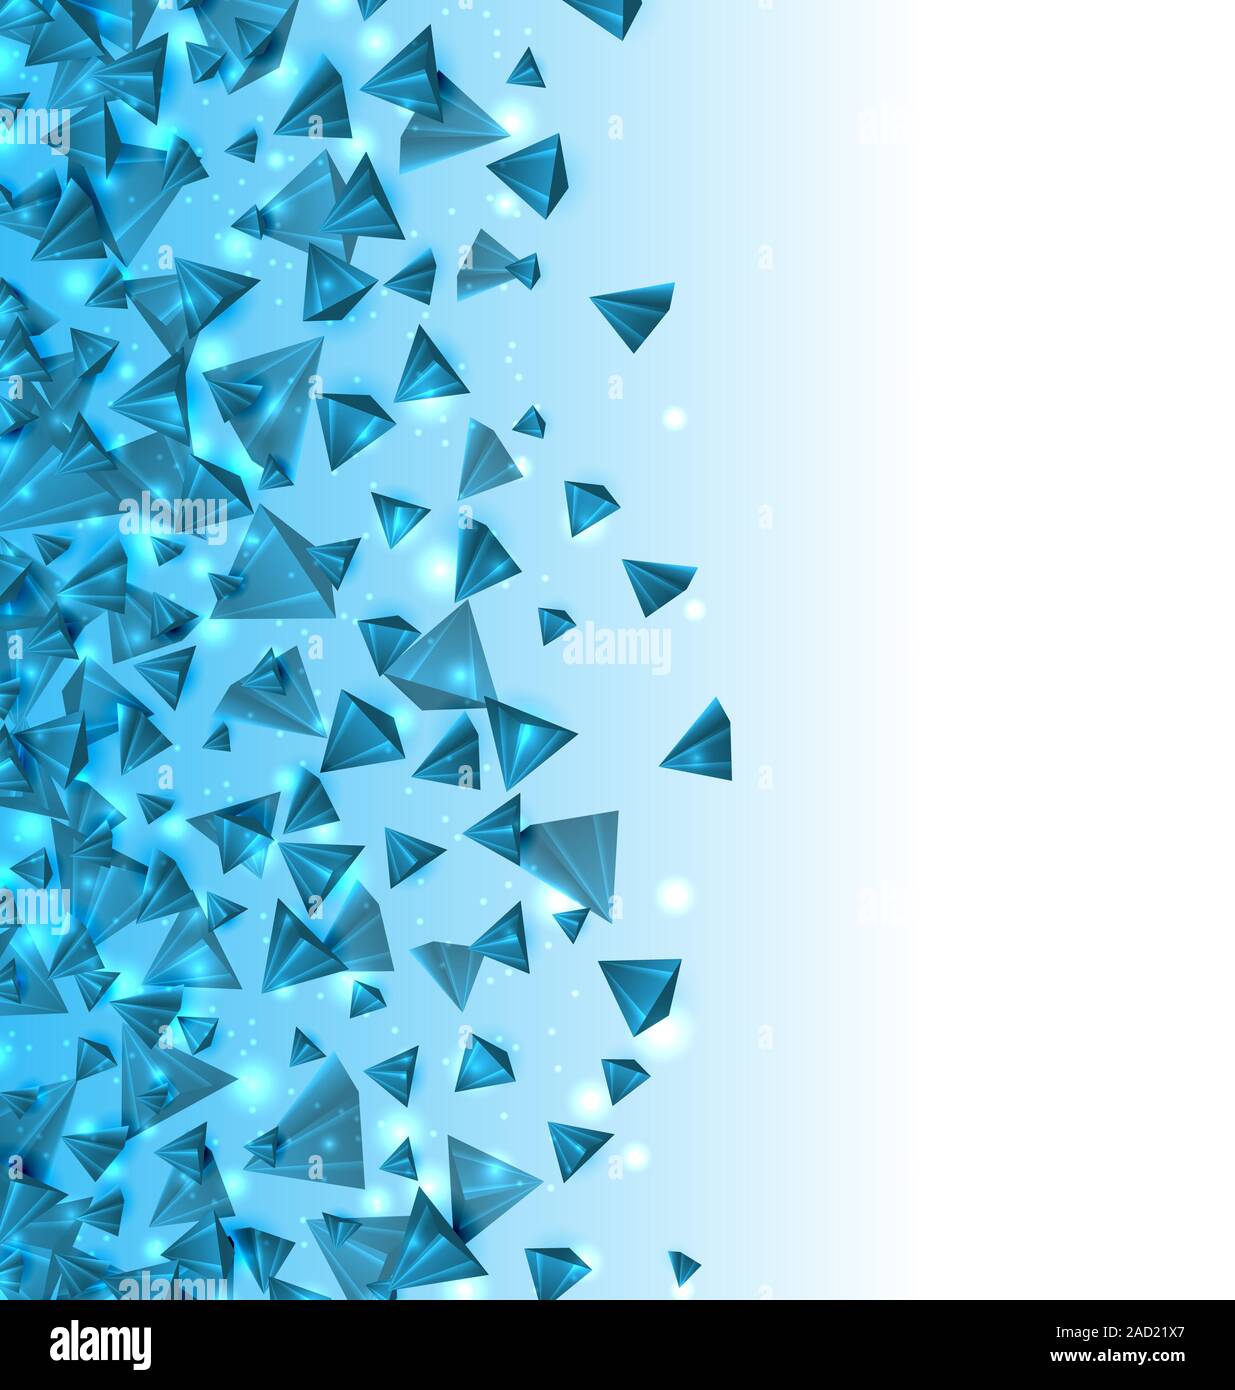 Zusammenfassung Hintergrund mit Pyramiden mit Lichteffekten. Modernes Design mit geometrischen Figuren Stockfoto